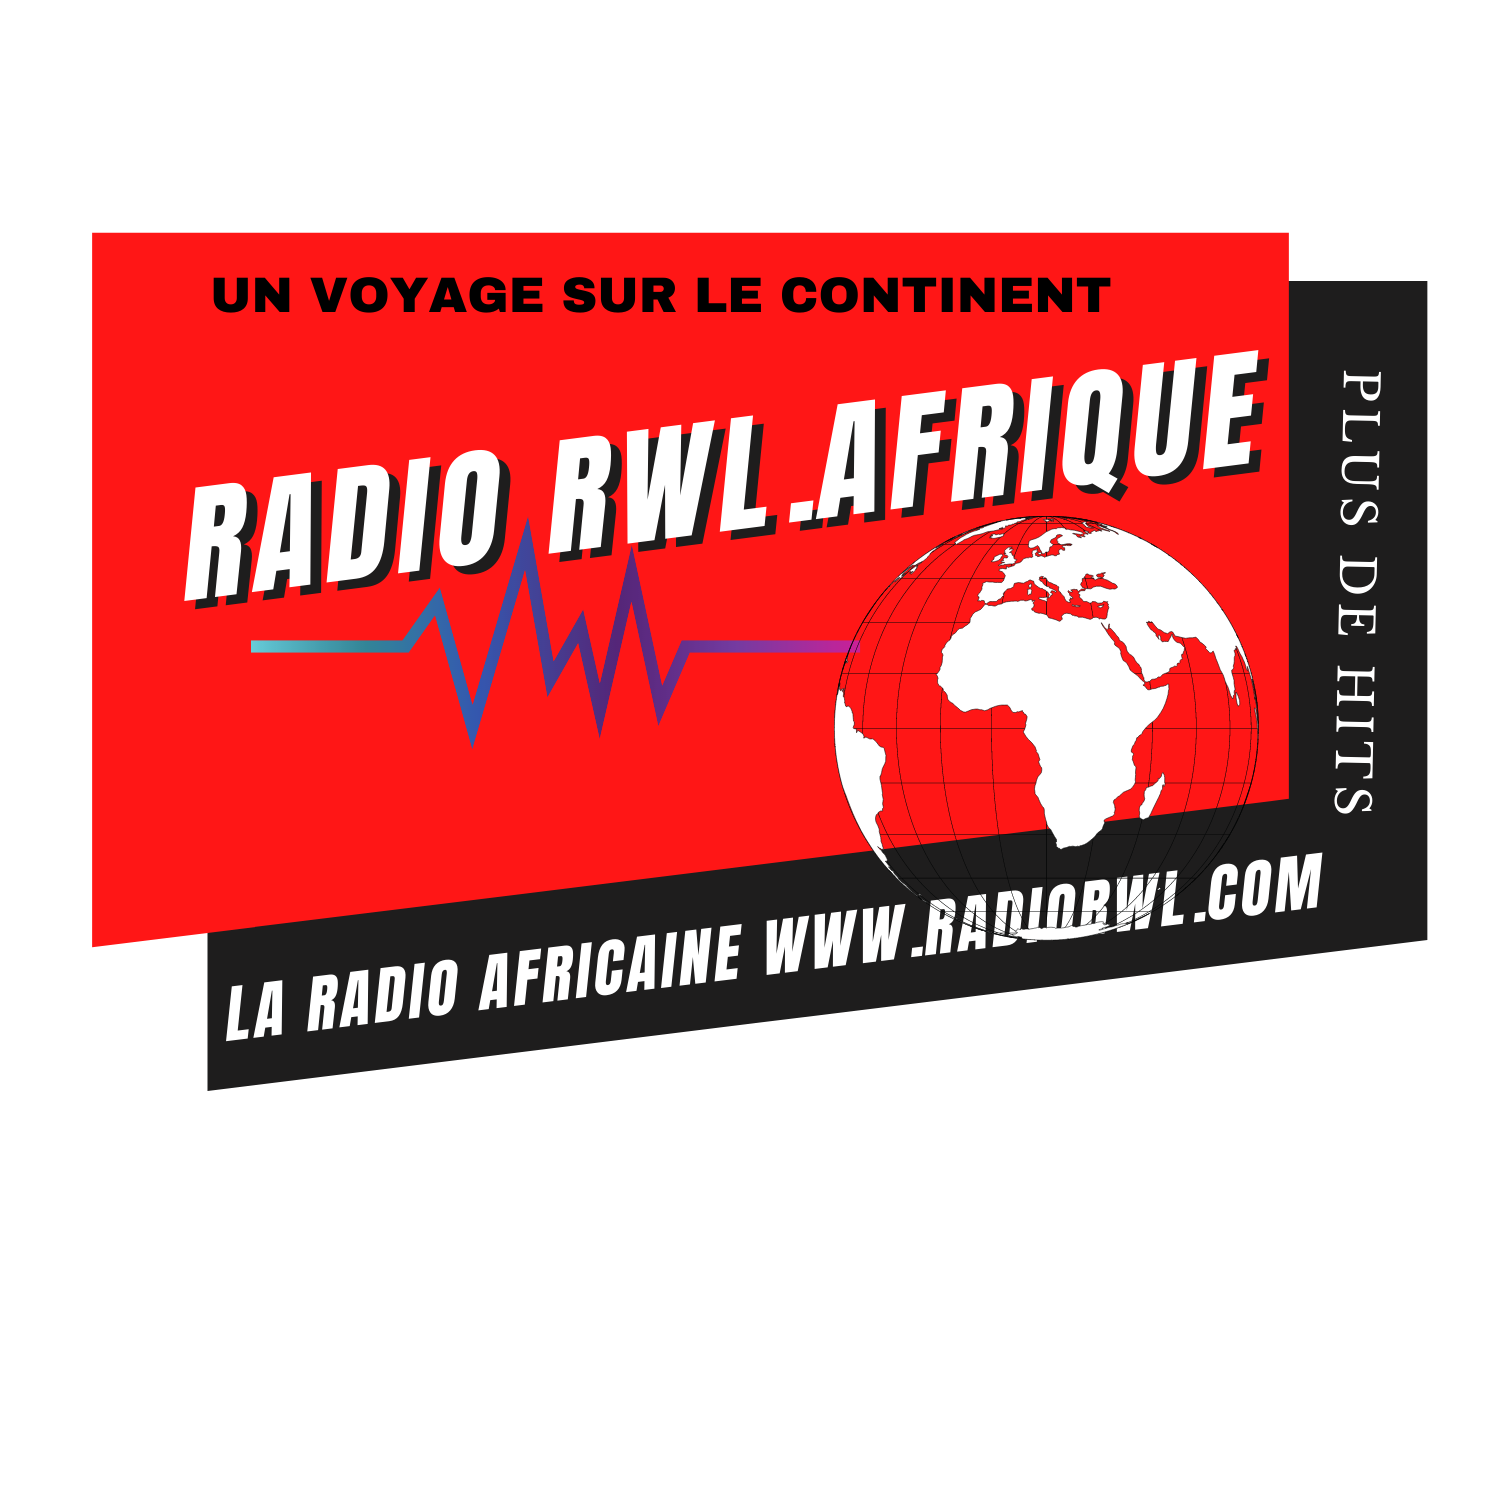 Radio RWL.Afrique